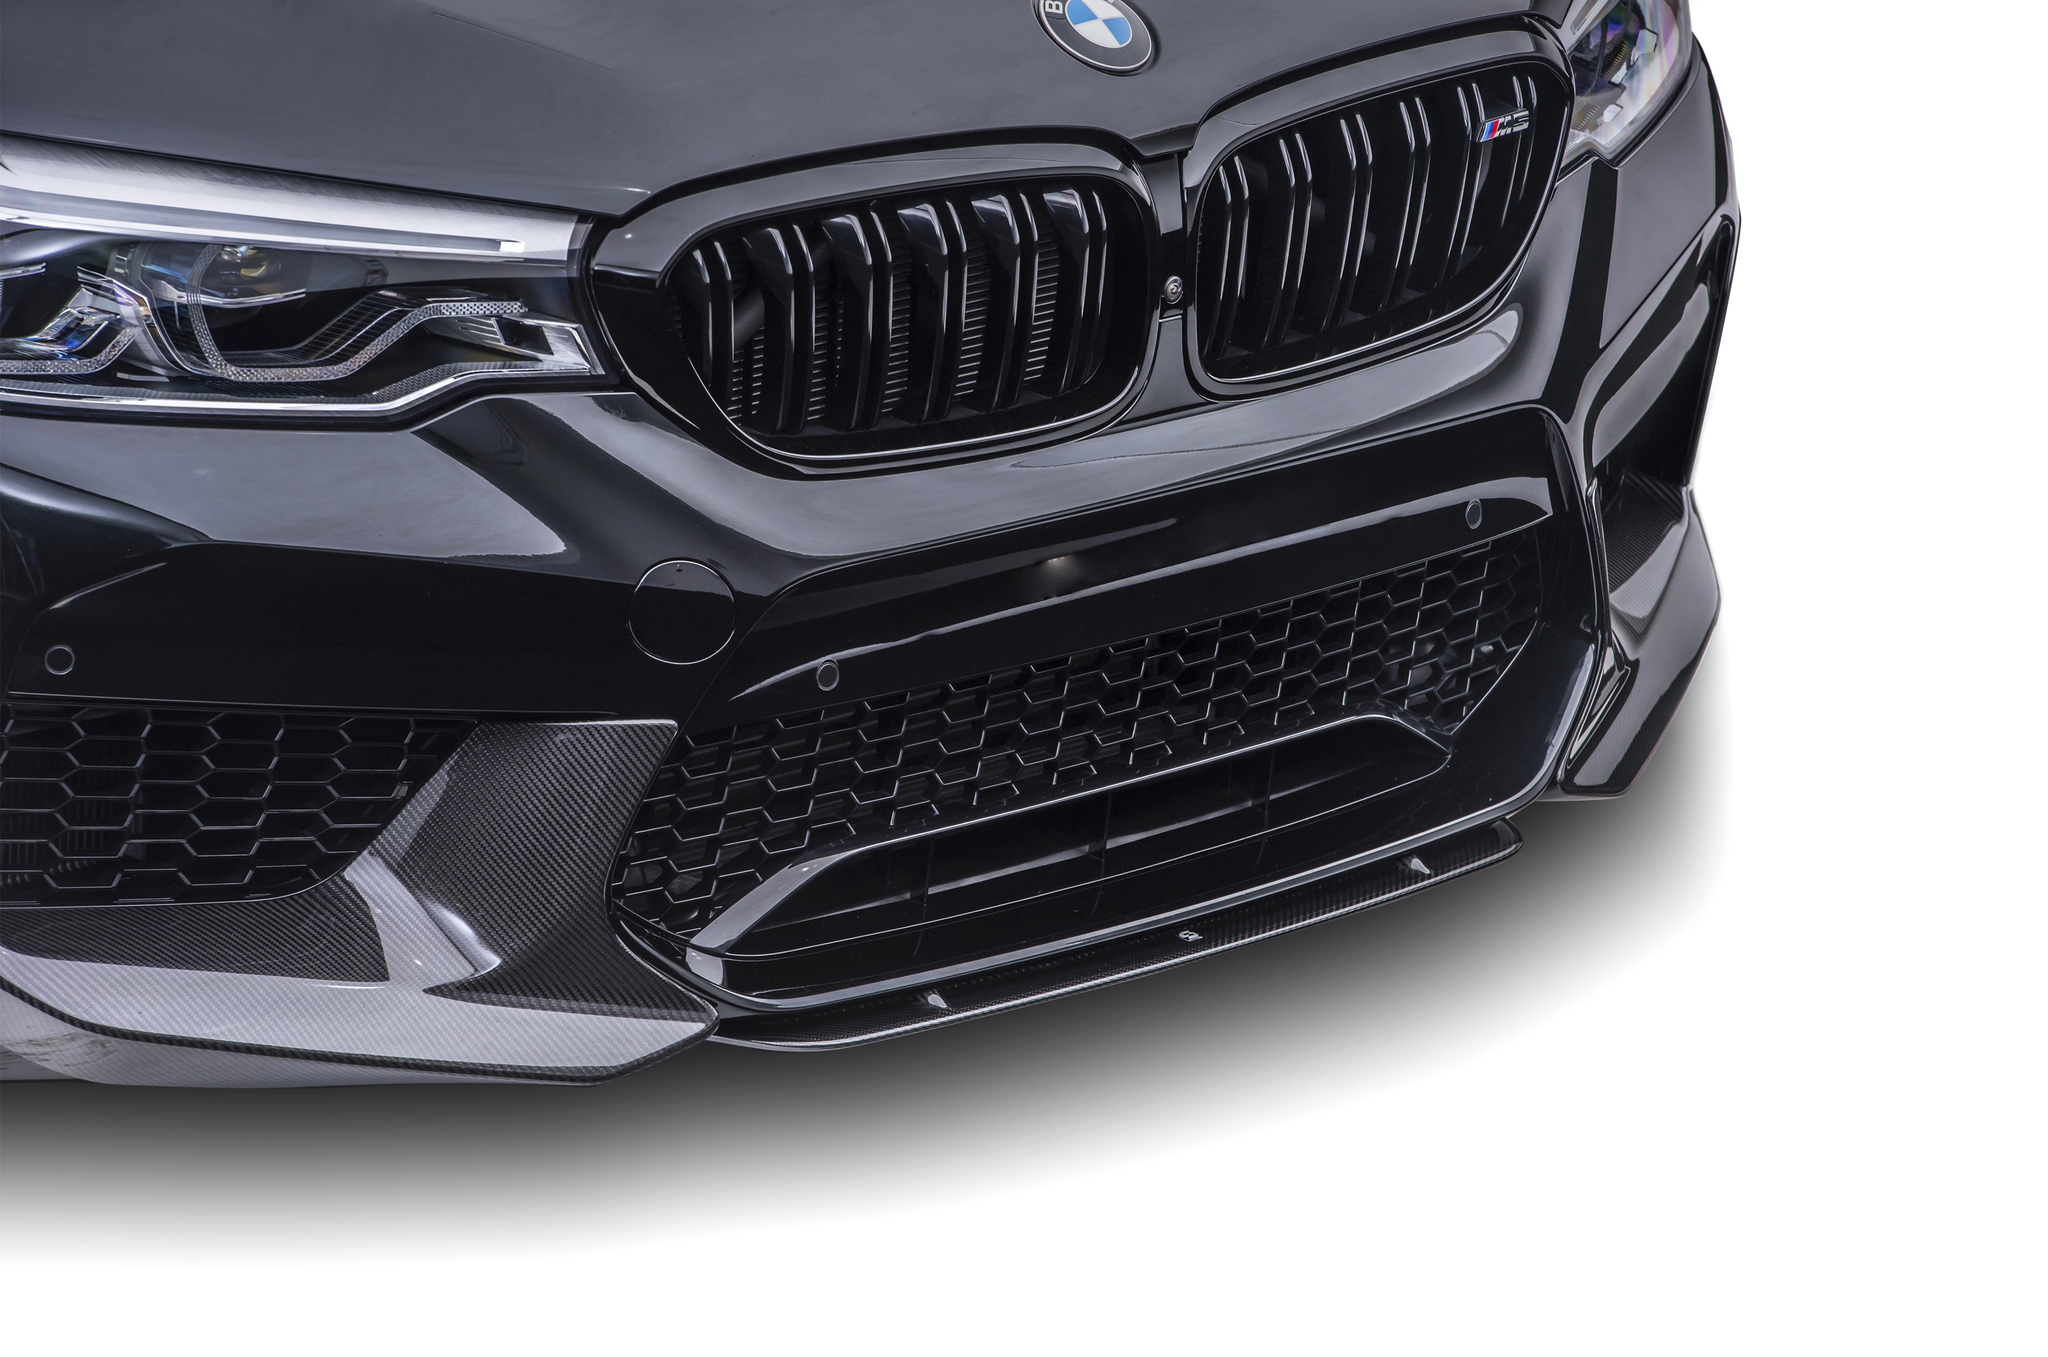 Sterckenn Carbon Fiber front splitter for BMW M5 F90 new model